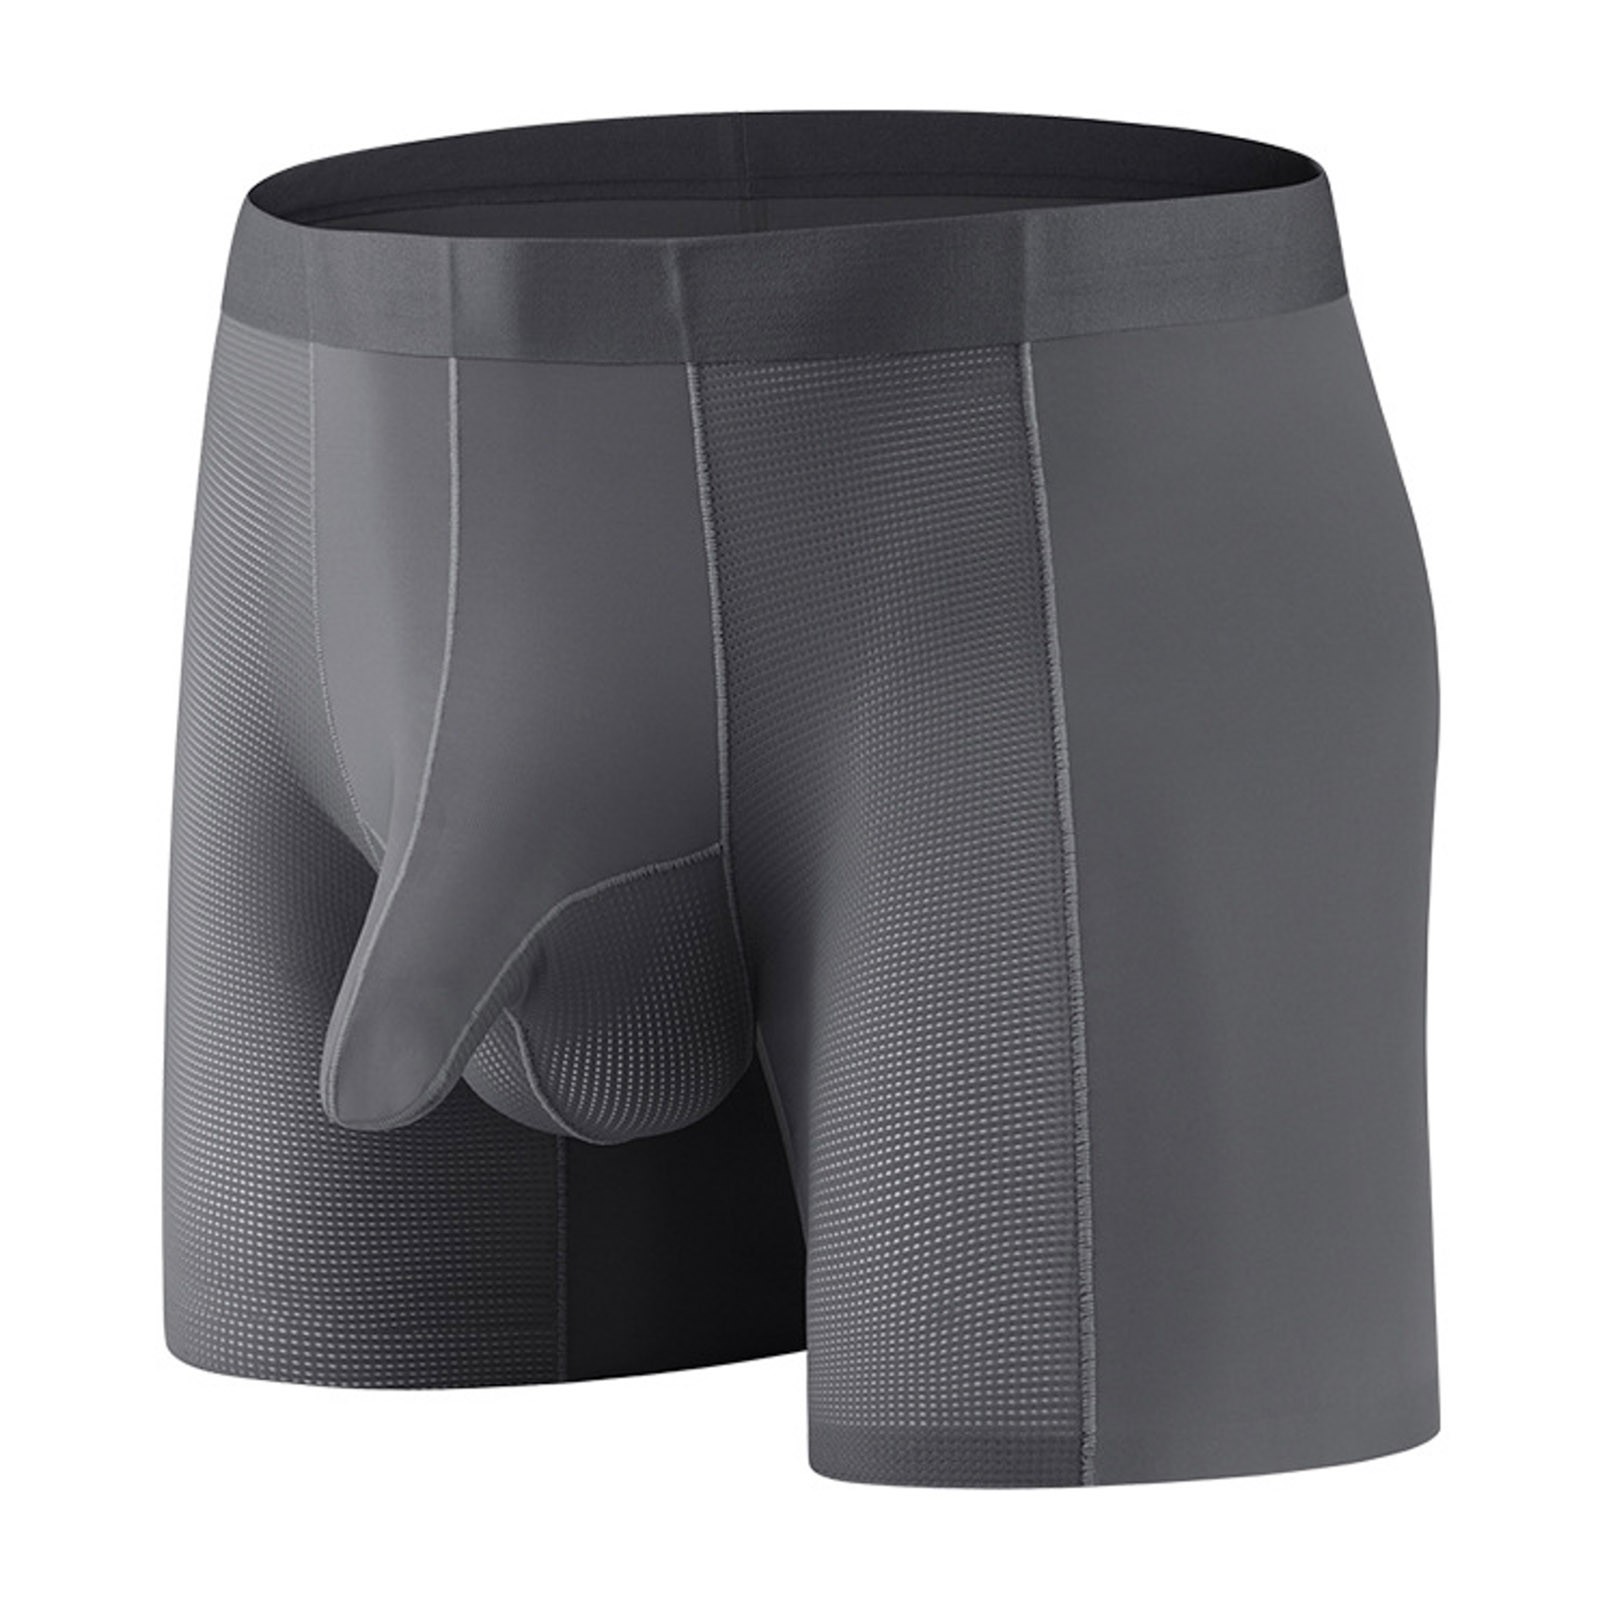 Durtebeua Long Leg Boxer Briefs For Men Cotton Men's Underwear Casual ...